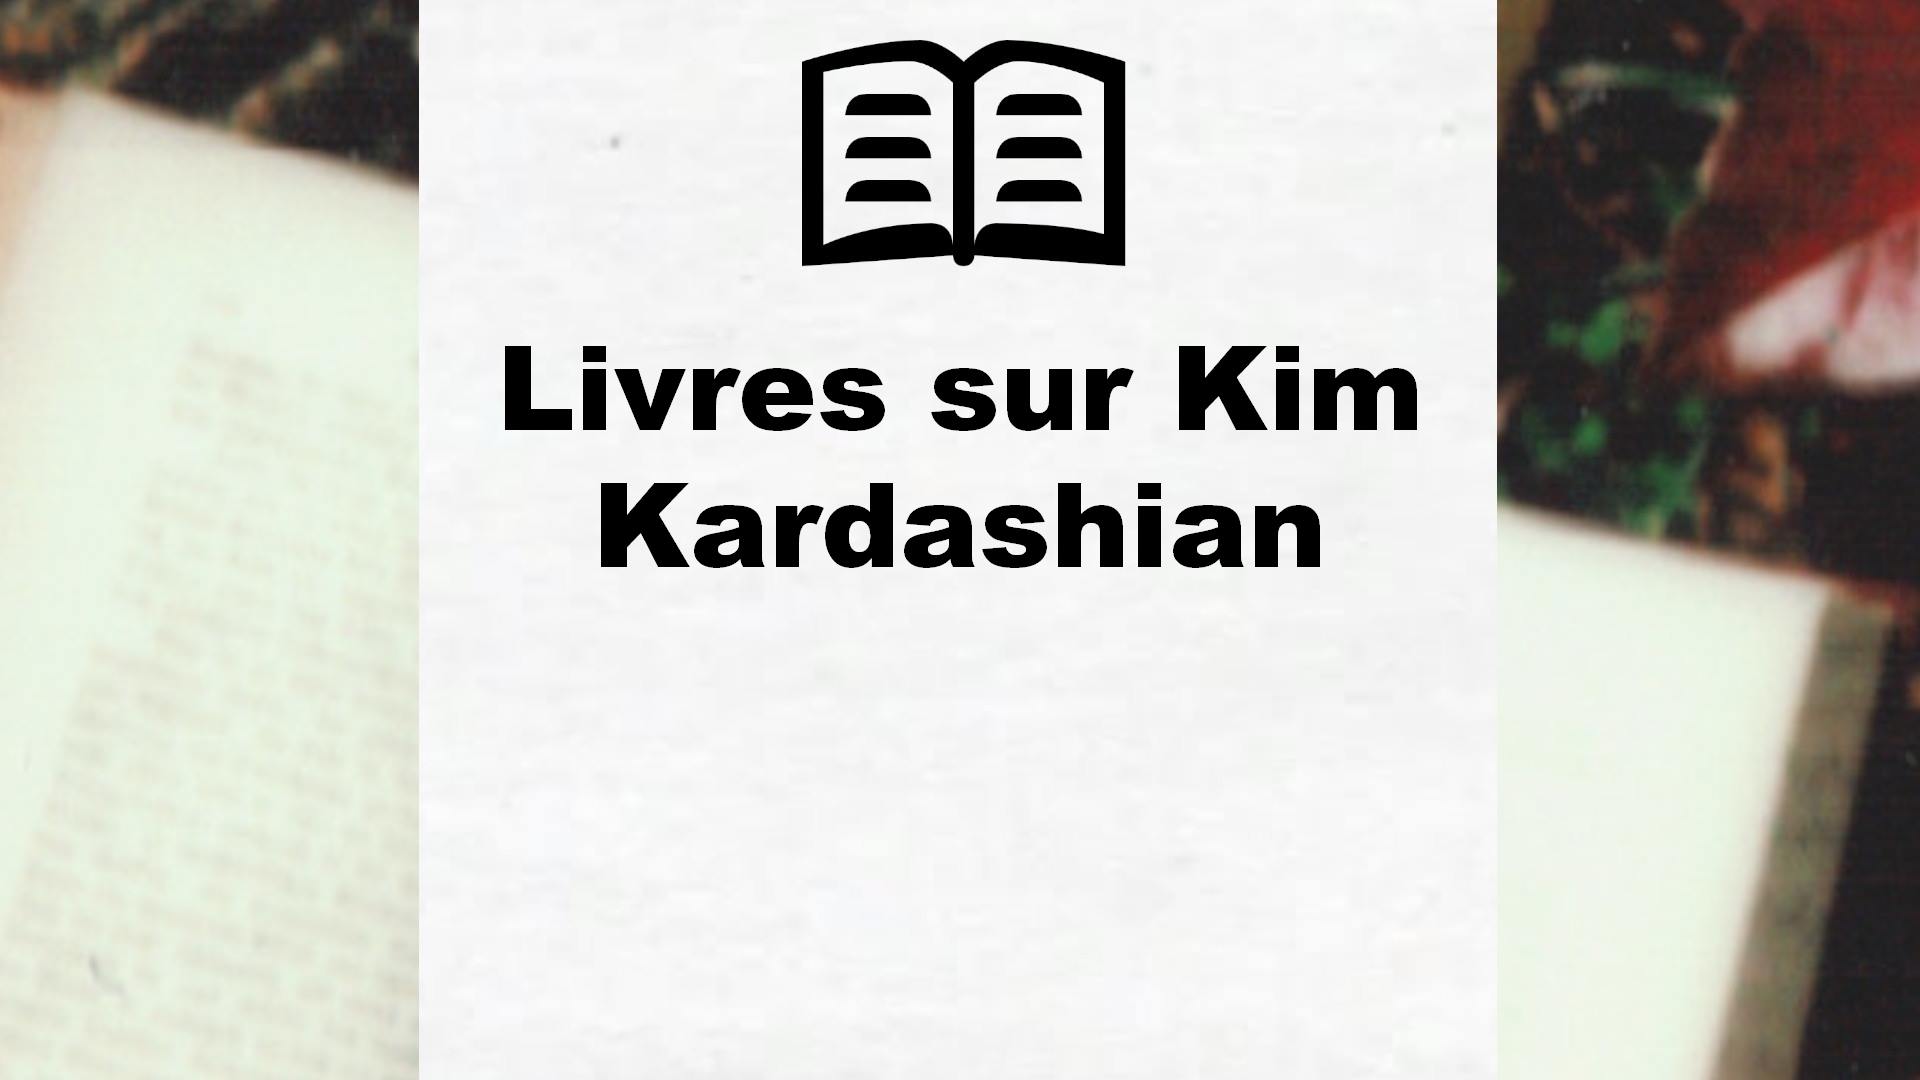 Livres sur Kim Kardashian